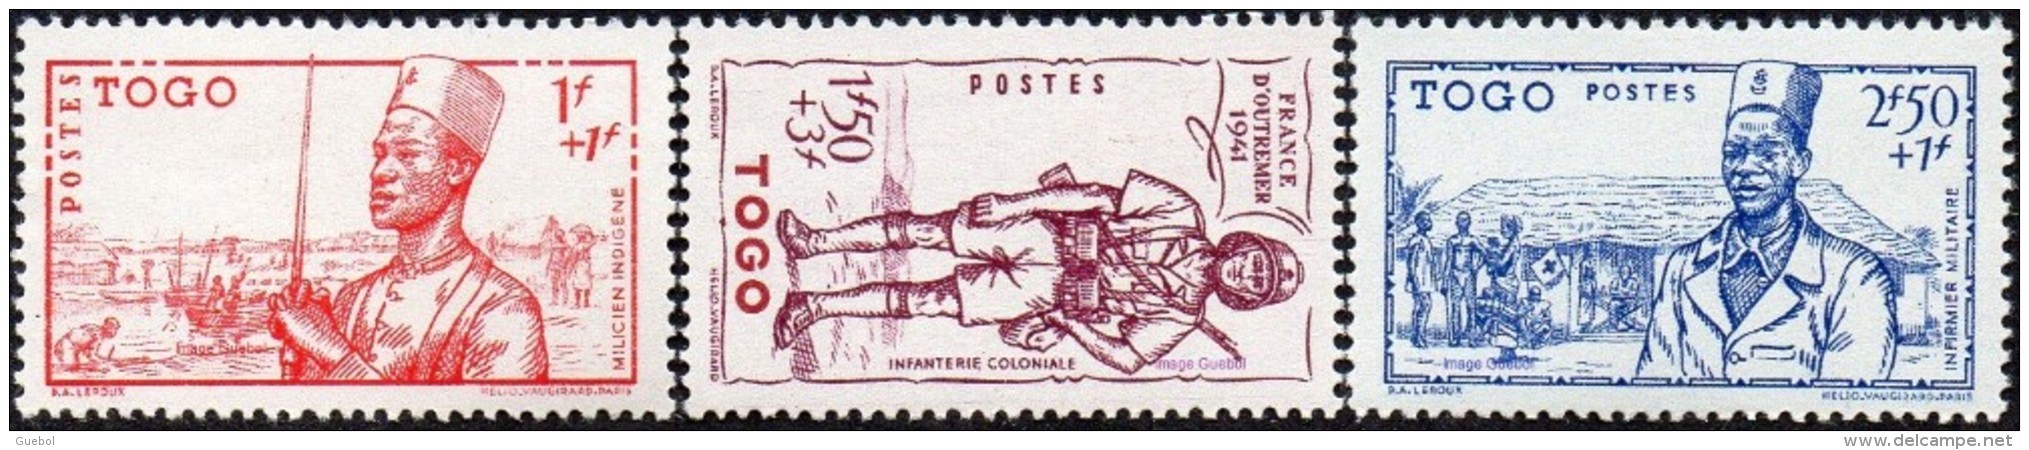 Détail De La Série Défense De L'Empire ** Togo N° 208 à 210 Costumes Militaires - 1941 Défense De L'Empire